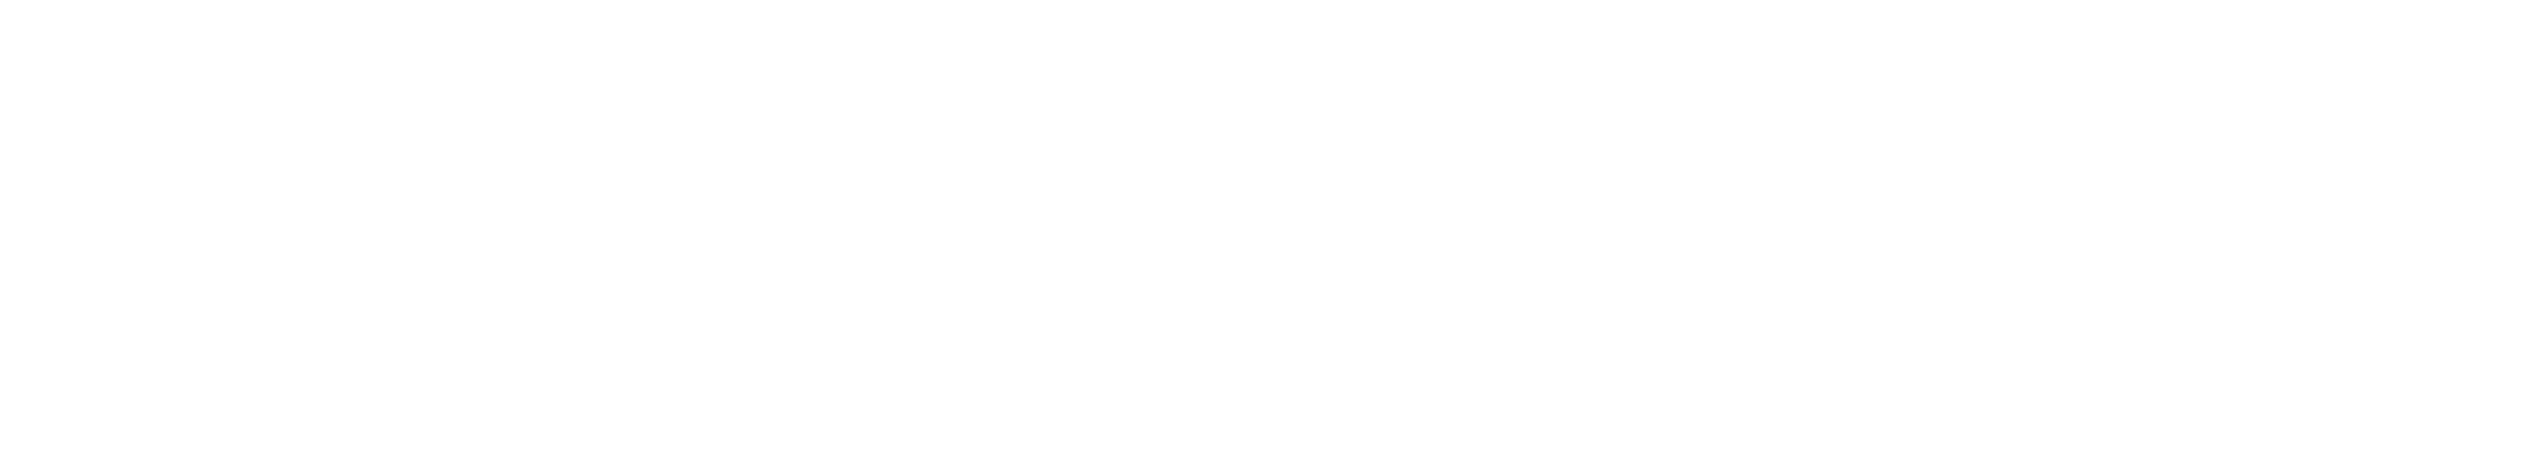 raven.gg logo